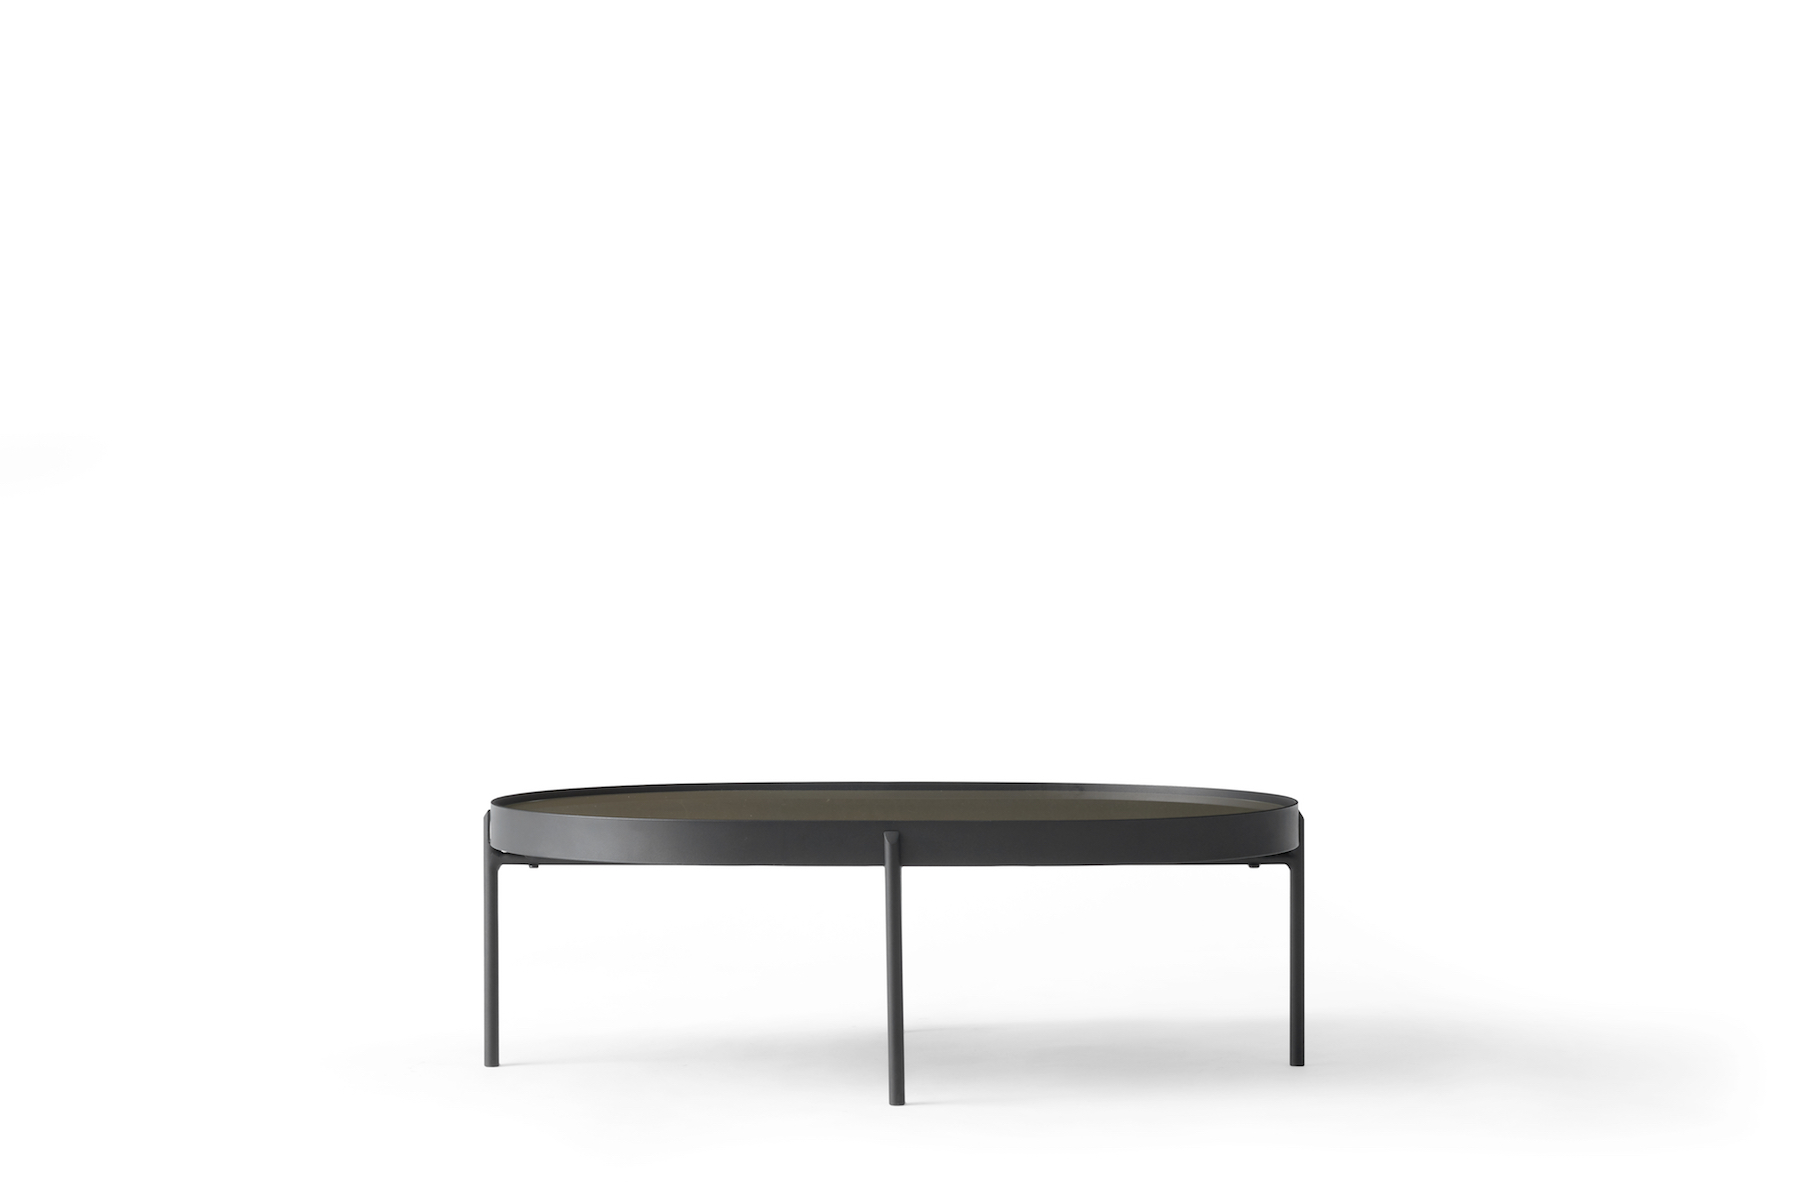 NoNo Table by Note Design Studio & Norm Architects